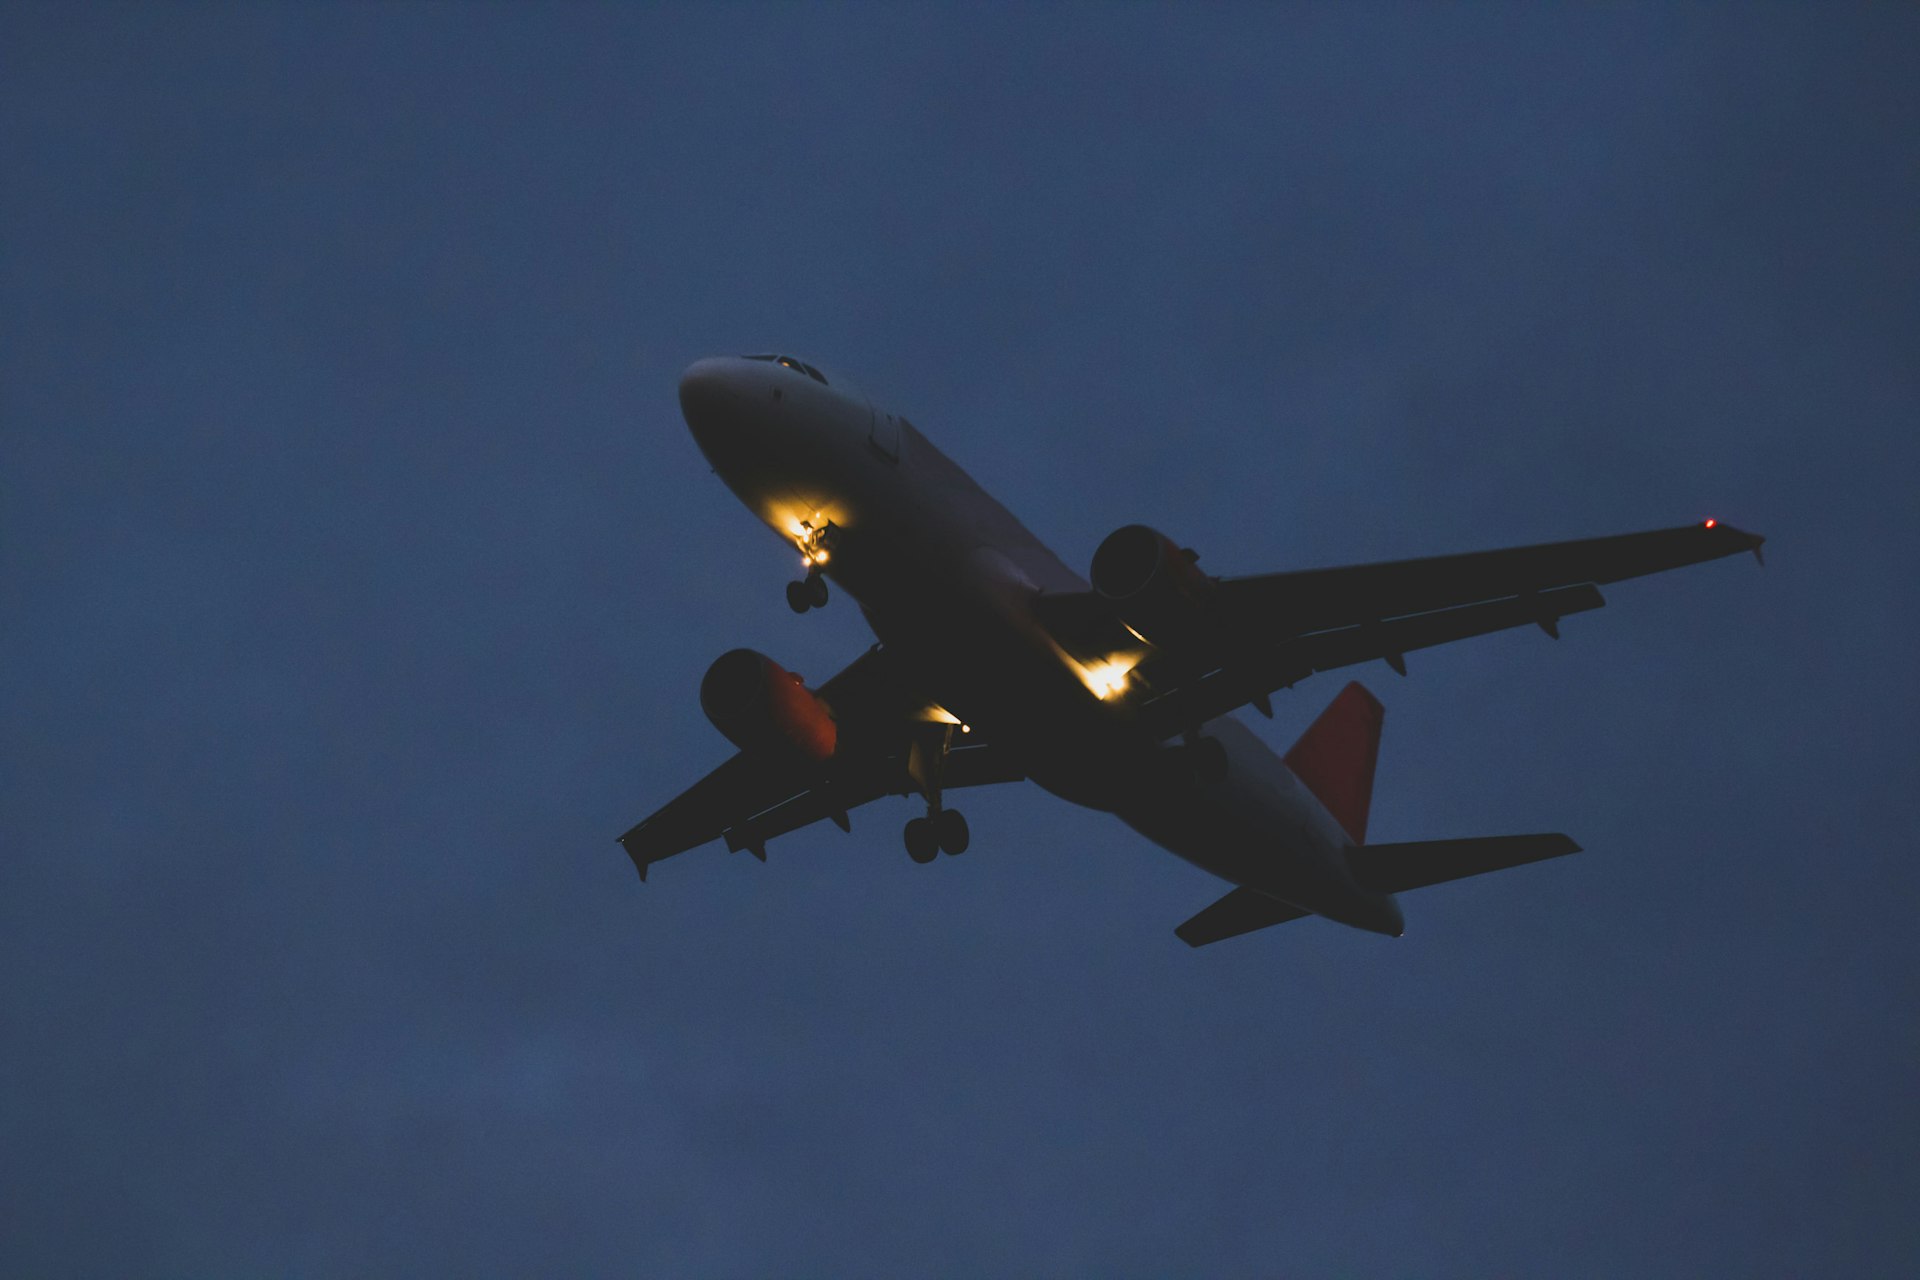 A passenger plane flies through a dark sky at dusk